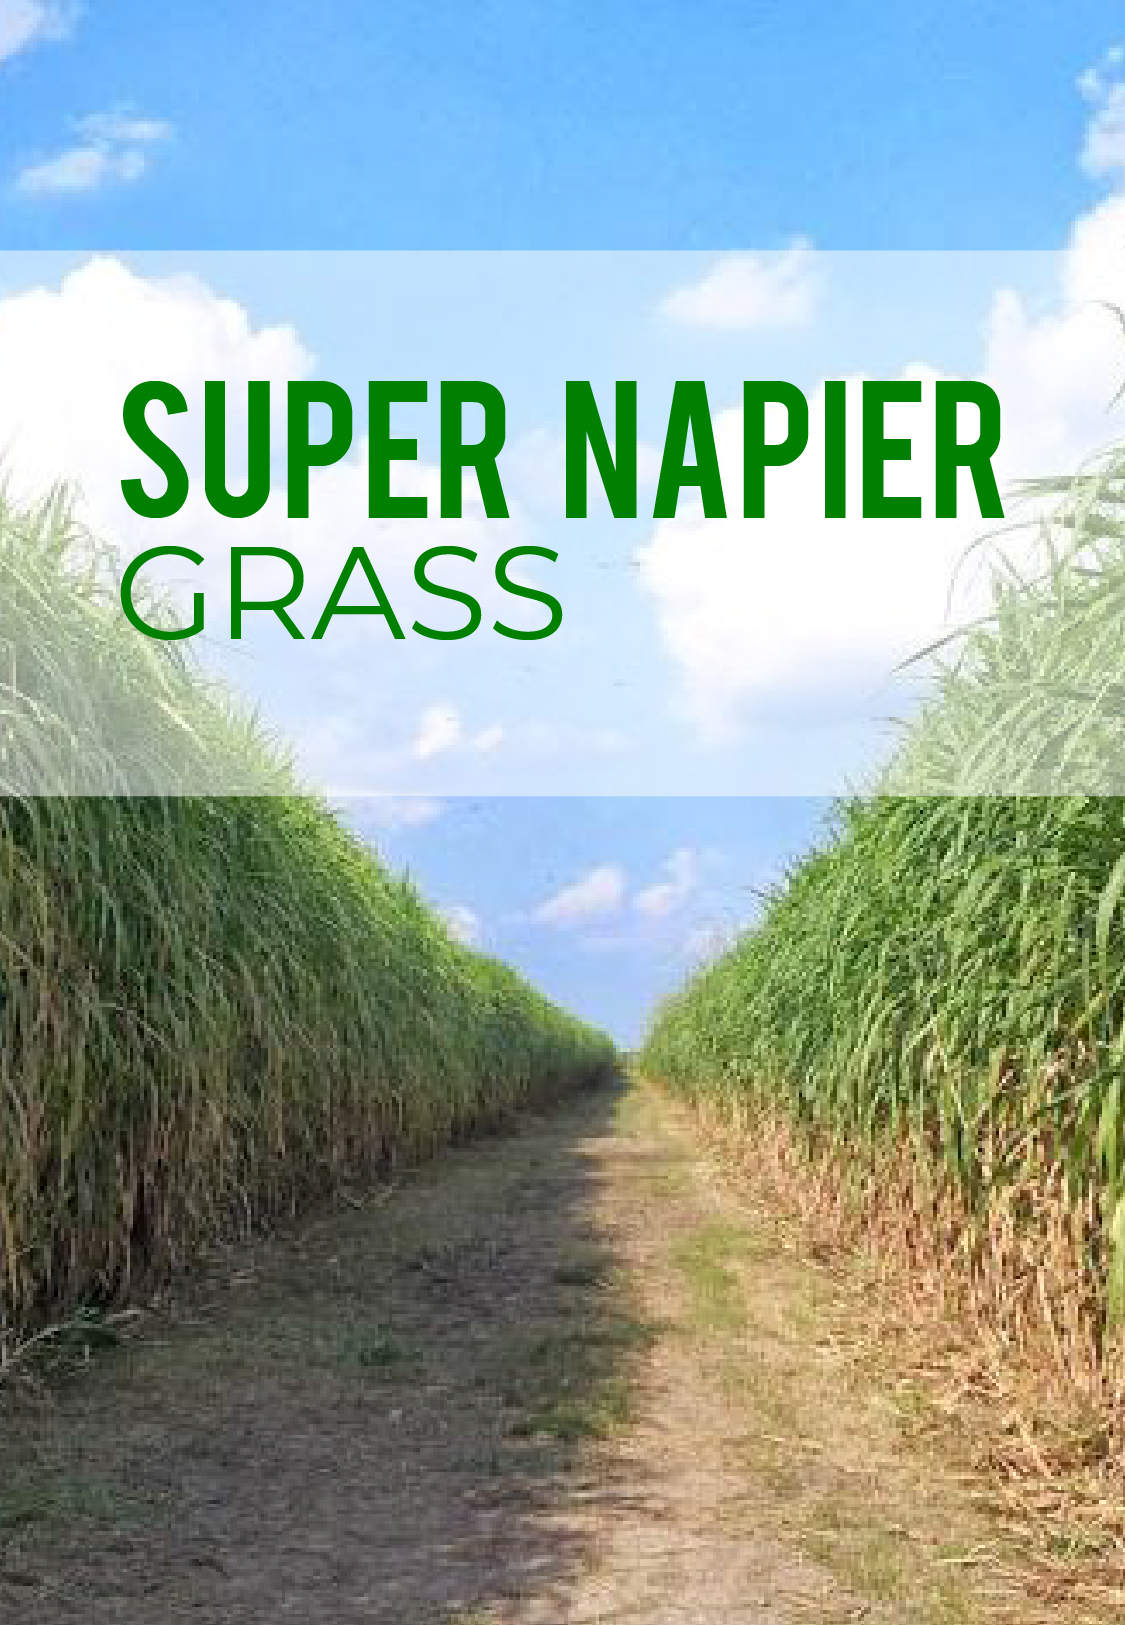 How to plant Super Napier grass